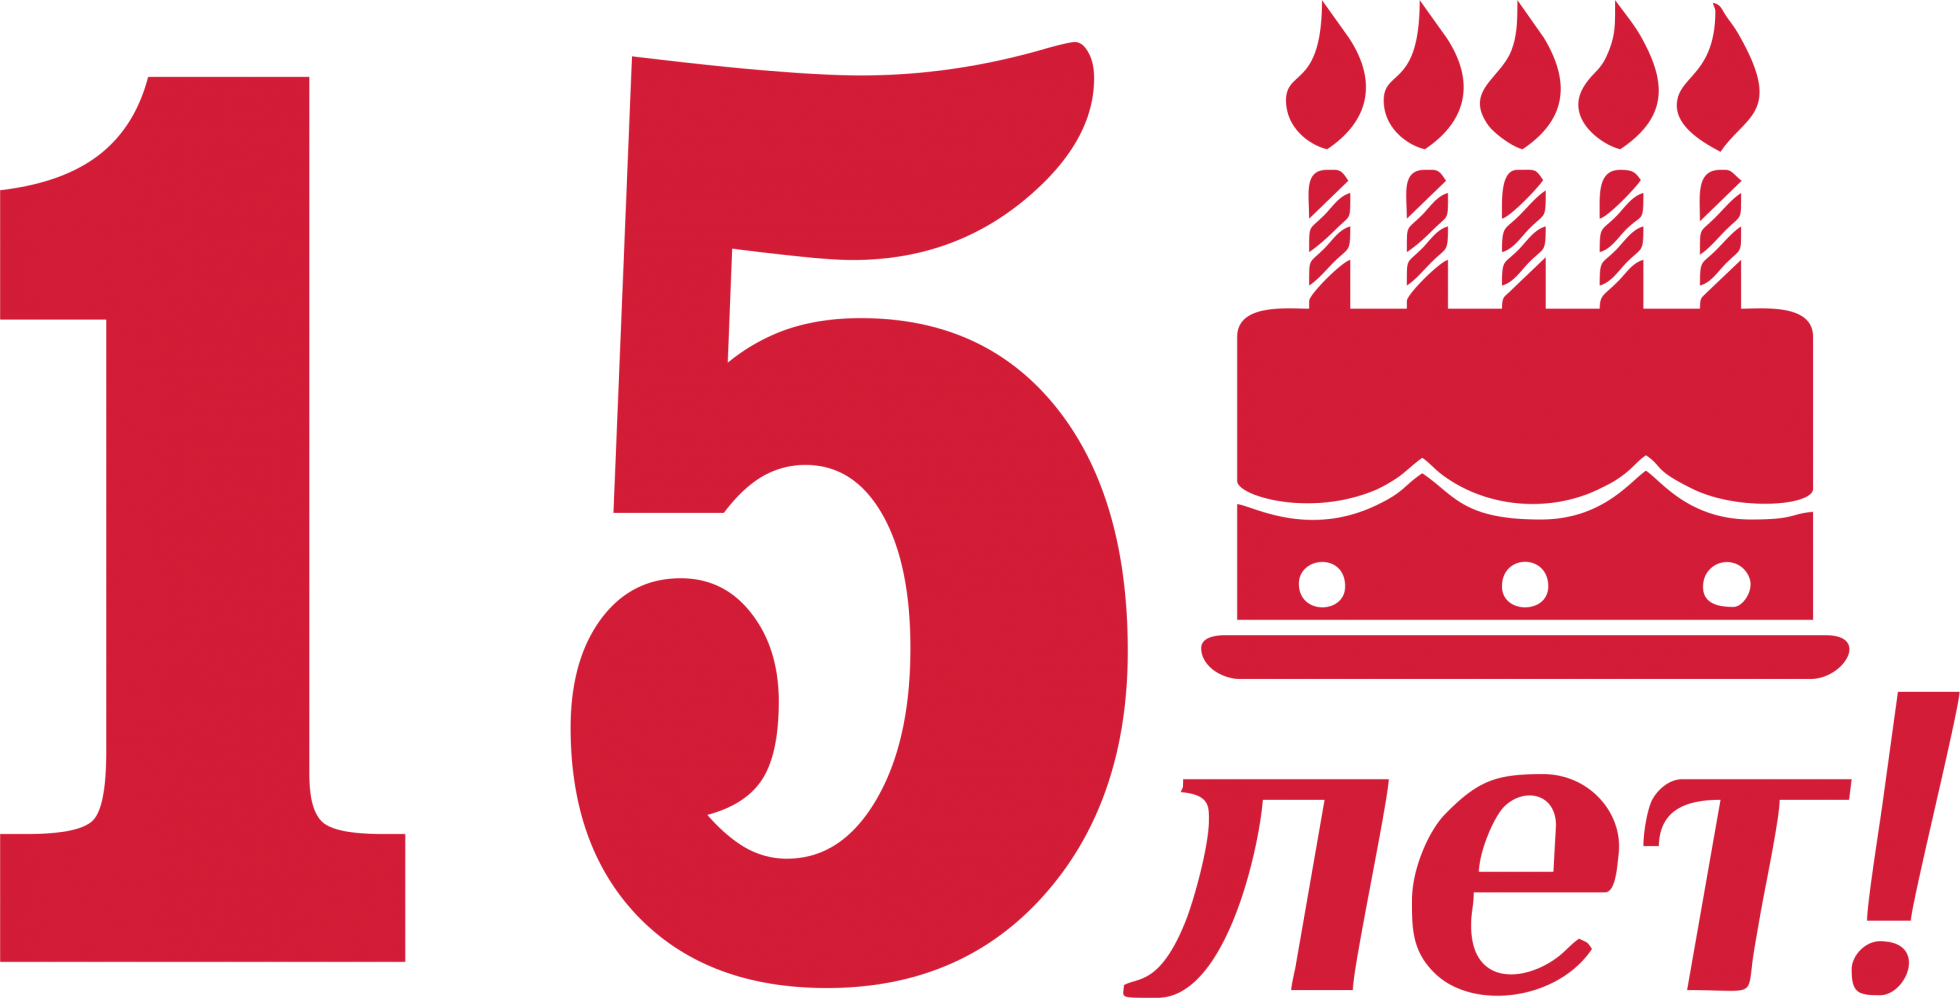 С 15 по 30 июня. 15 Лет компании. Юбилей компании 15 лет. День рождения организации 15 лет. Открытка с юбилеем компании 15 лет.